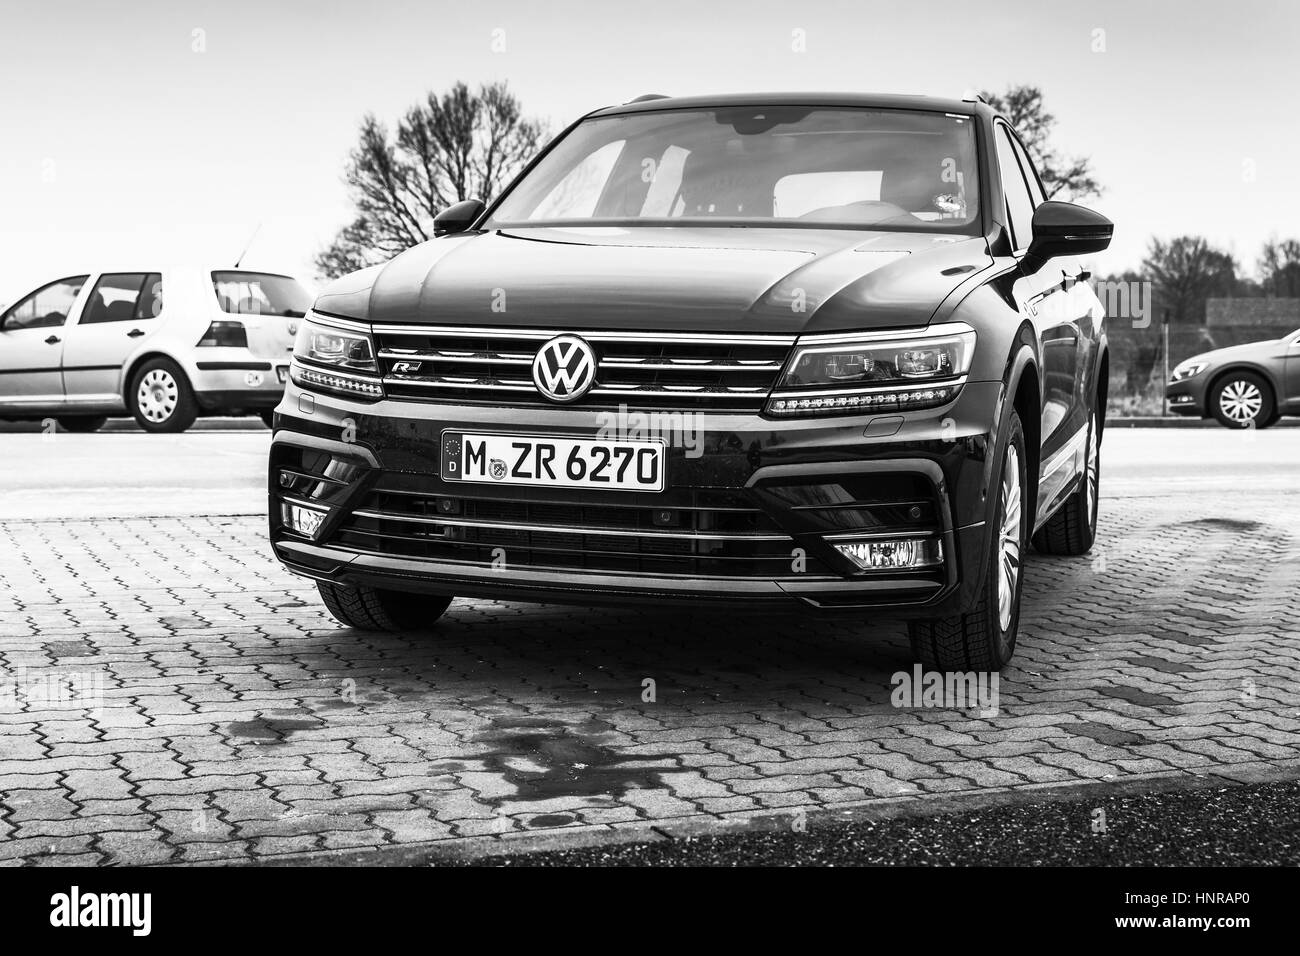 Hambourg, Allemagne - 10 Février 2017 : une photo de deuxième génération Volkswagen Tiguan, 4x4 R-Line. Véhicule multisegment compact par constructeur allemand Banque D'Images